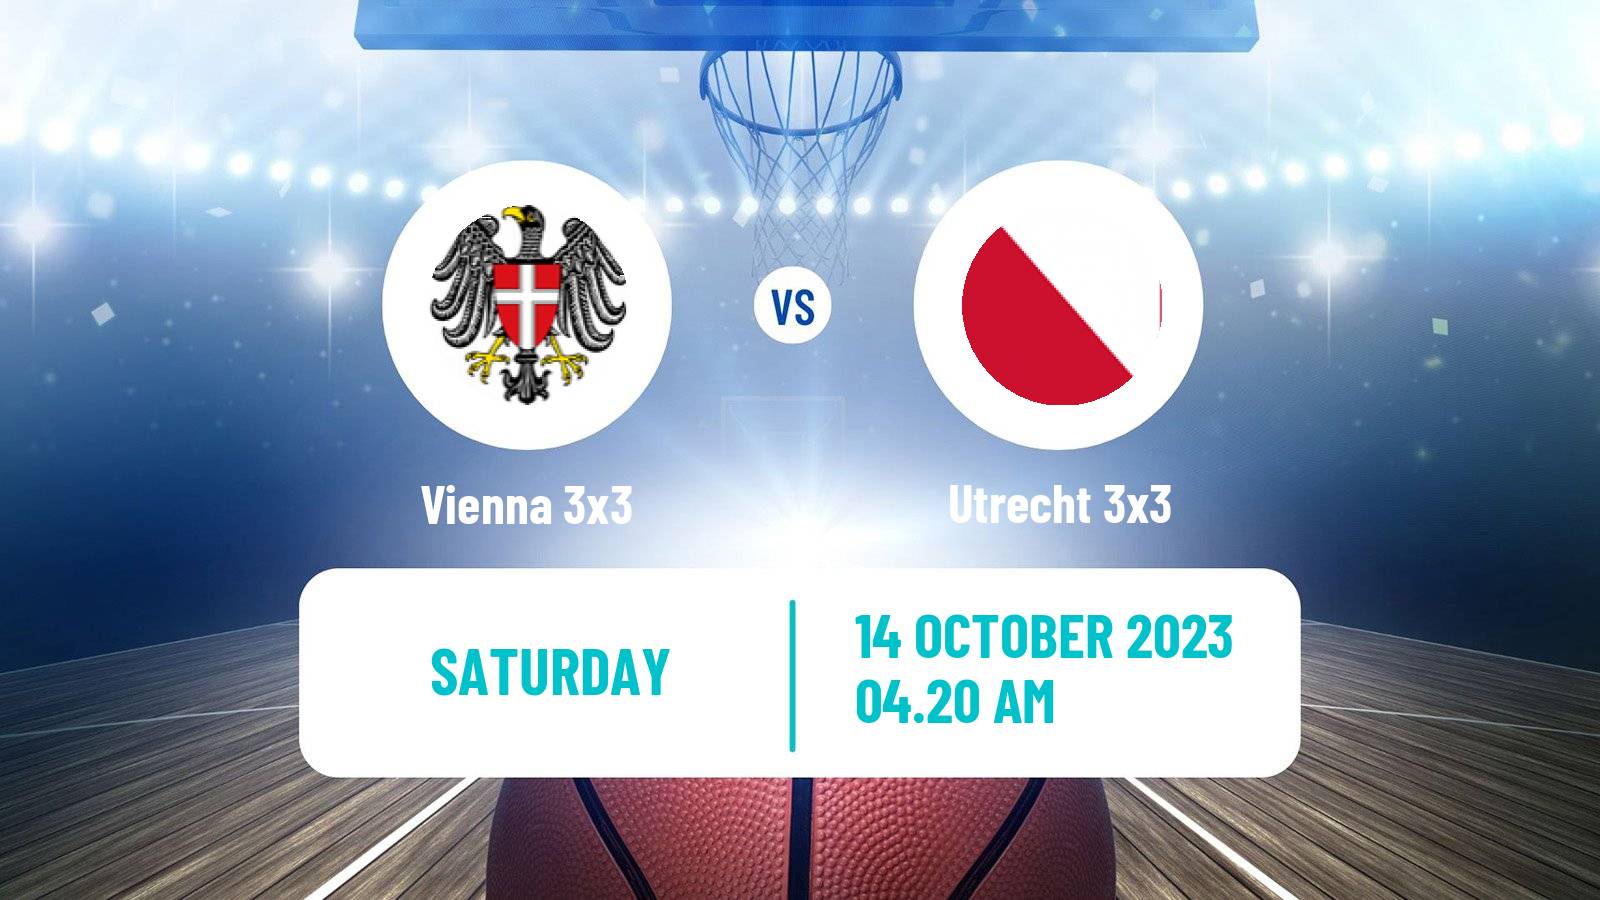 Basketball World Tour Shanghai 3x3 Vienna 3x3 - Utrecht 3x3